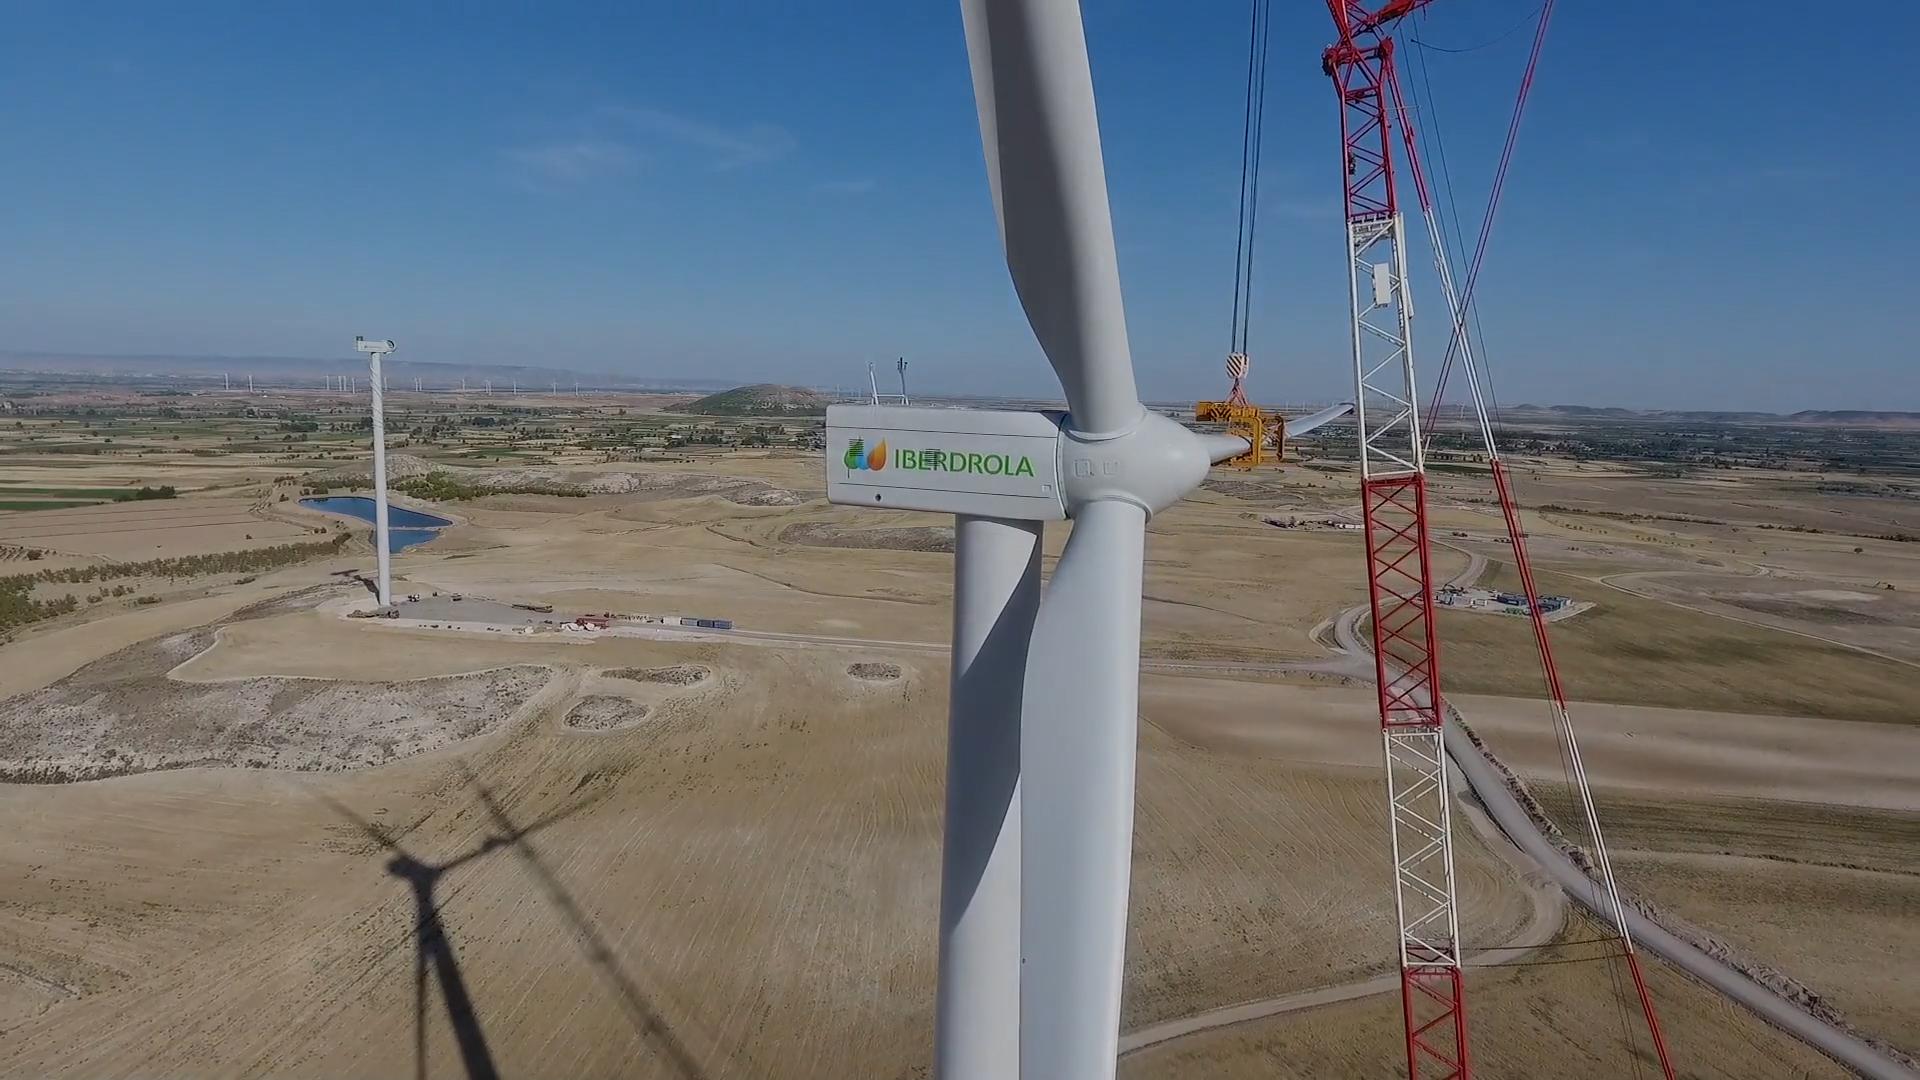 Construcción del parque eólico El Pradillo de Iberdrola en Aragón